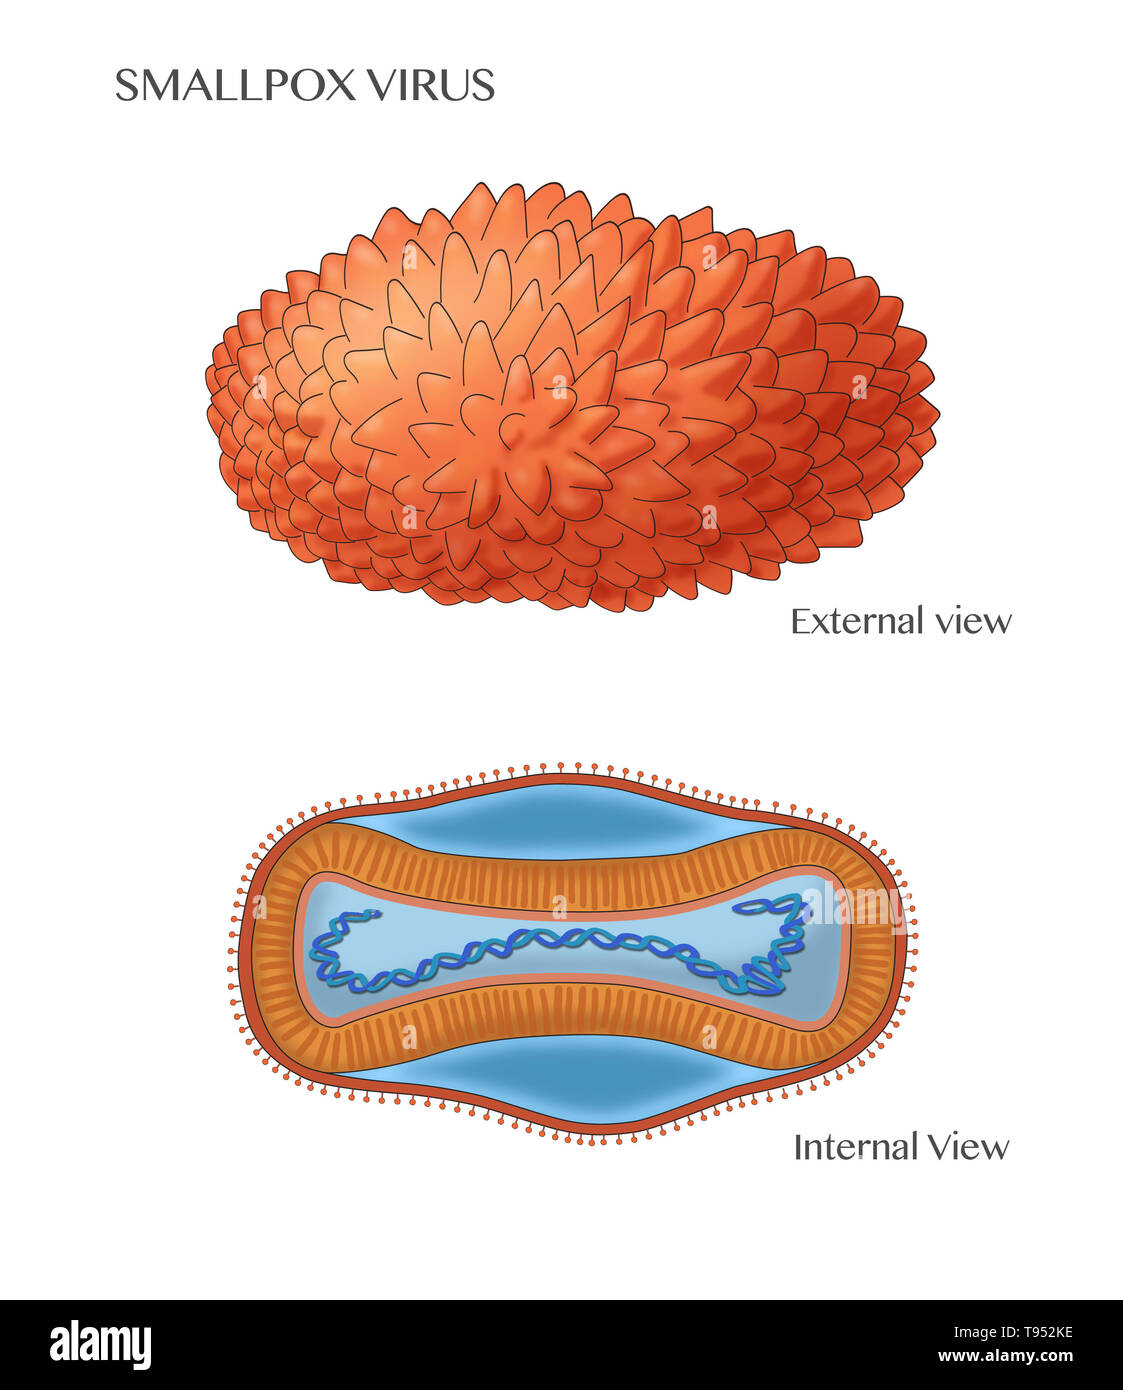 Illustration de l'étiquette le virus de la variole, montrant une vue externe (en haut) et la structure interne (en bas). Banque D'Images